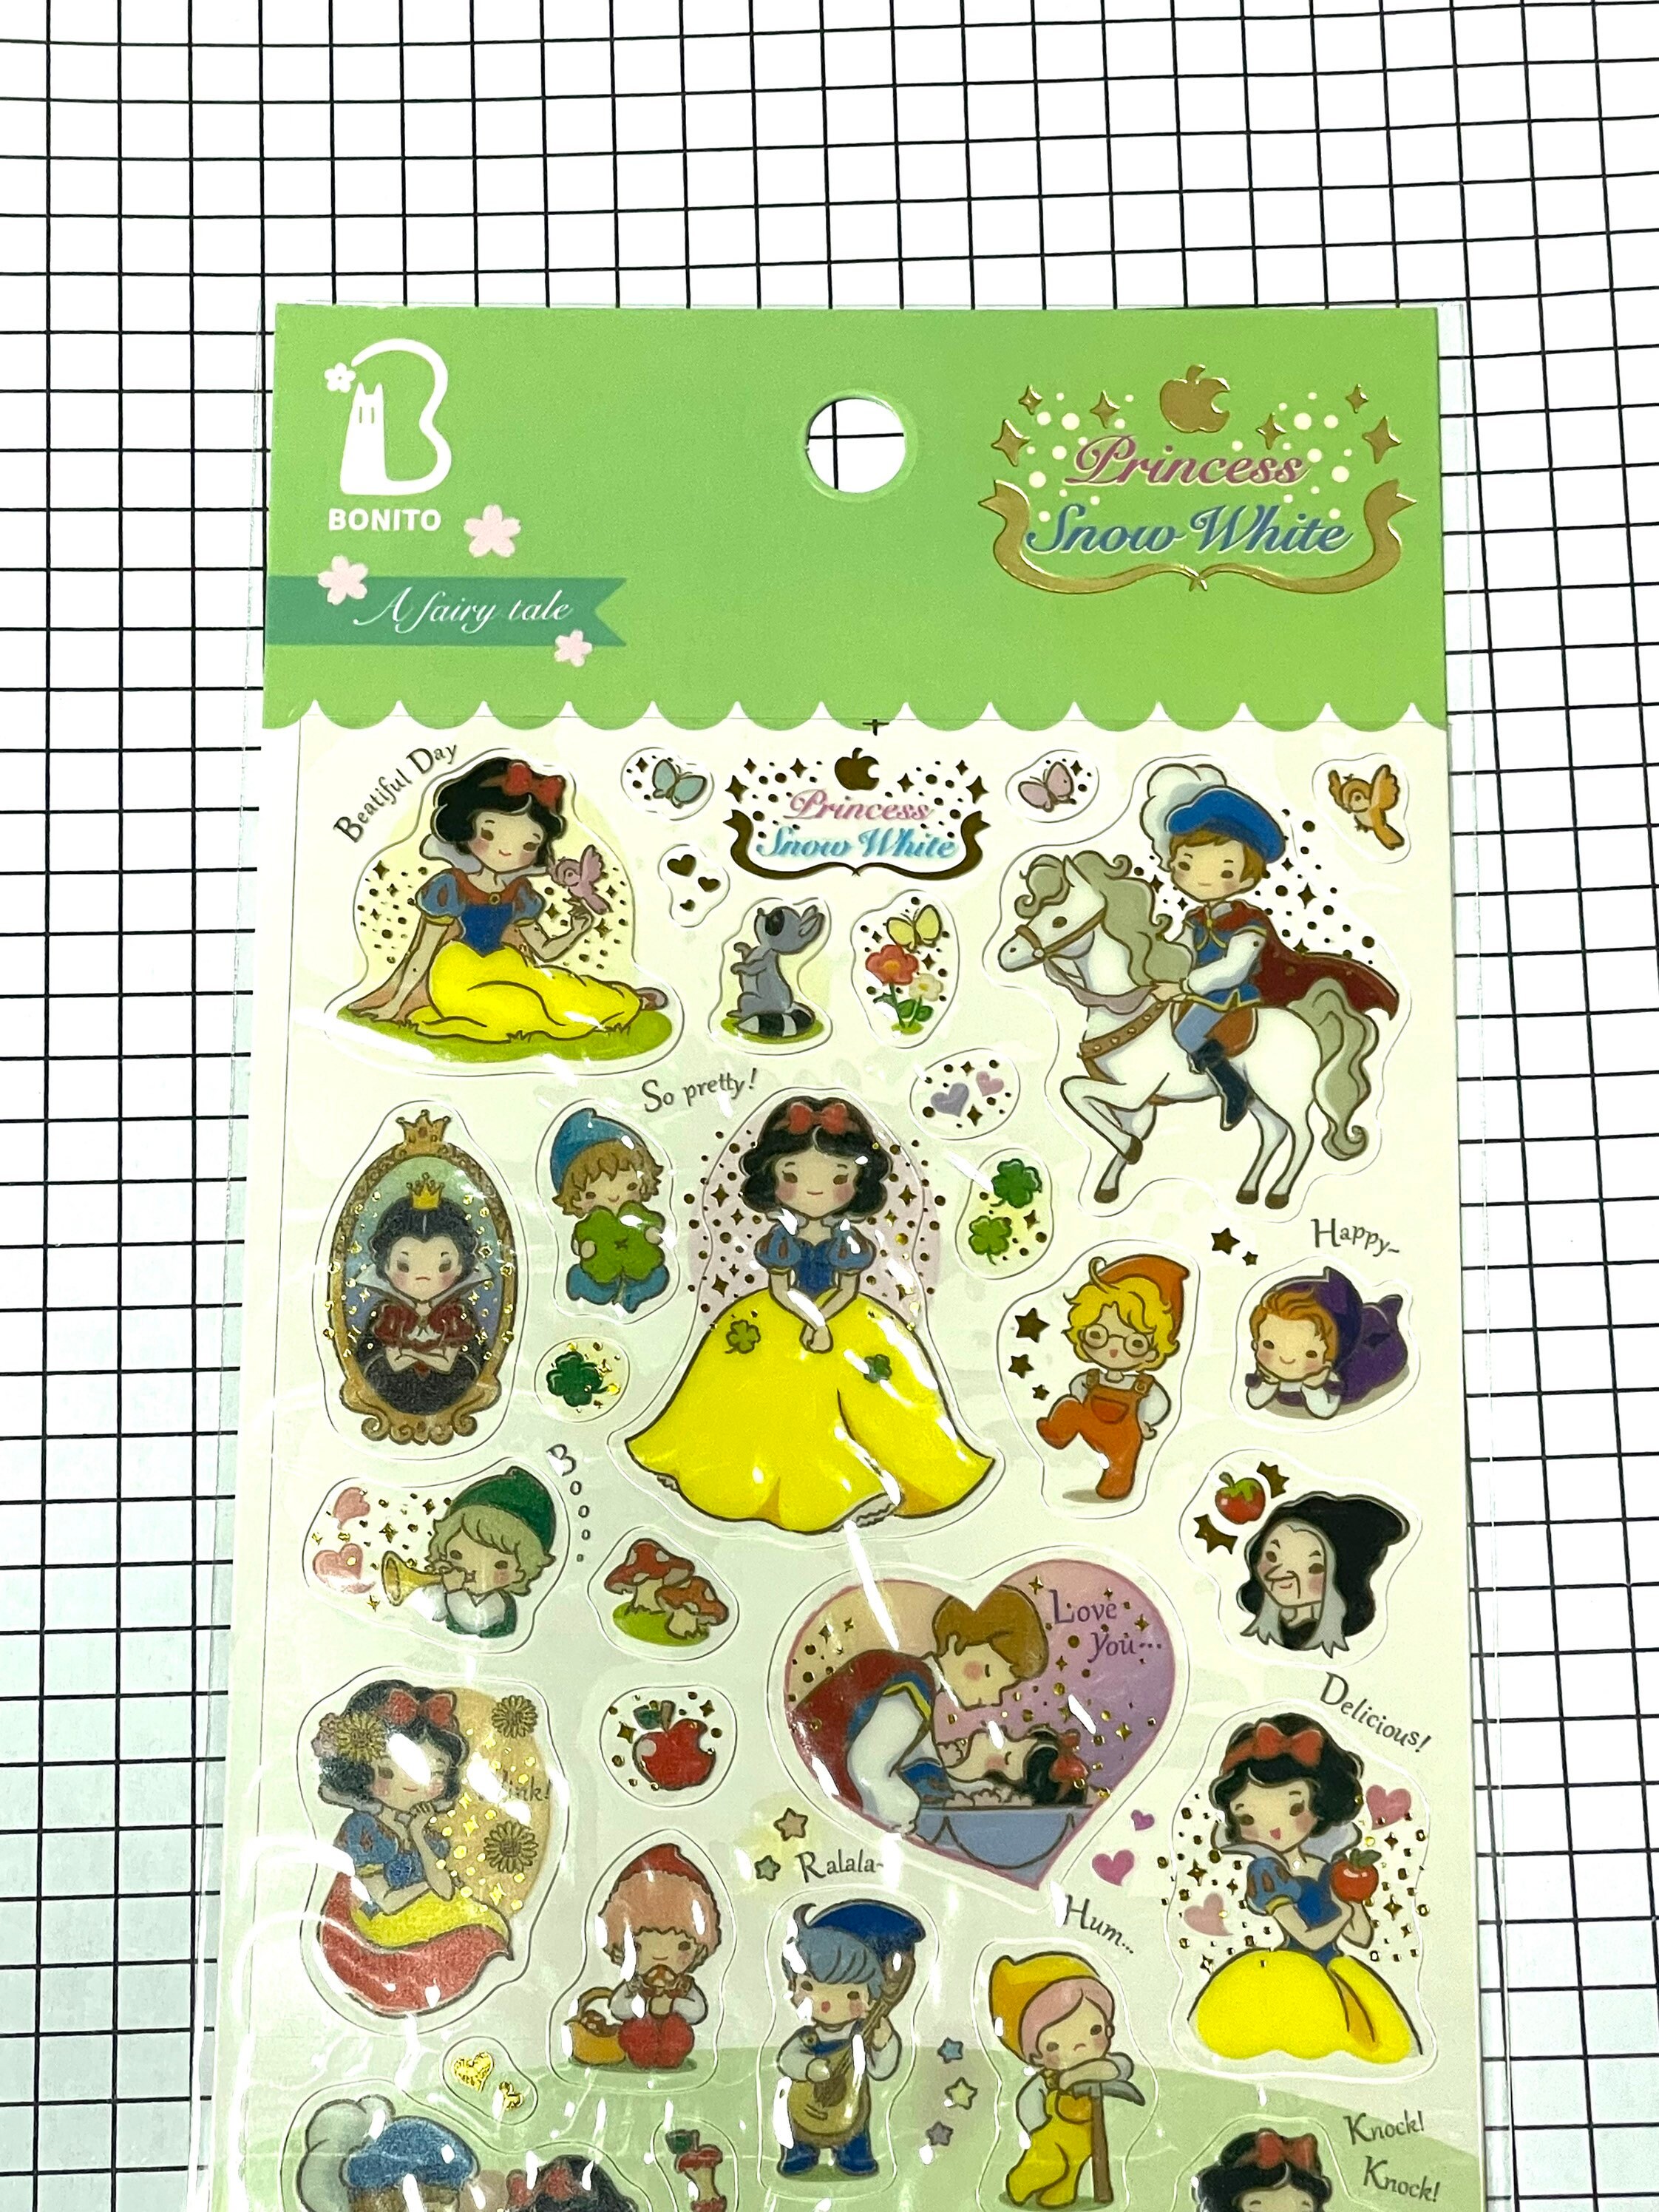 SK221 Fairy Fantasy Stickers - Barebooks